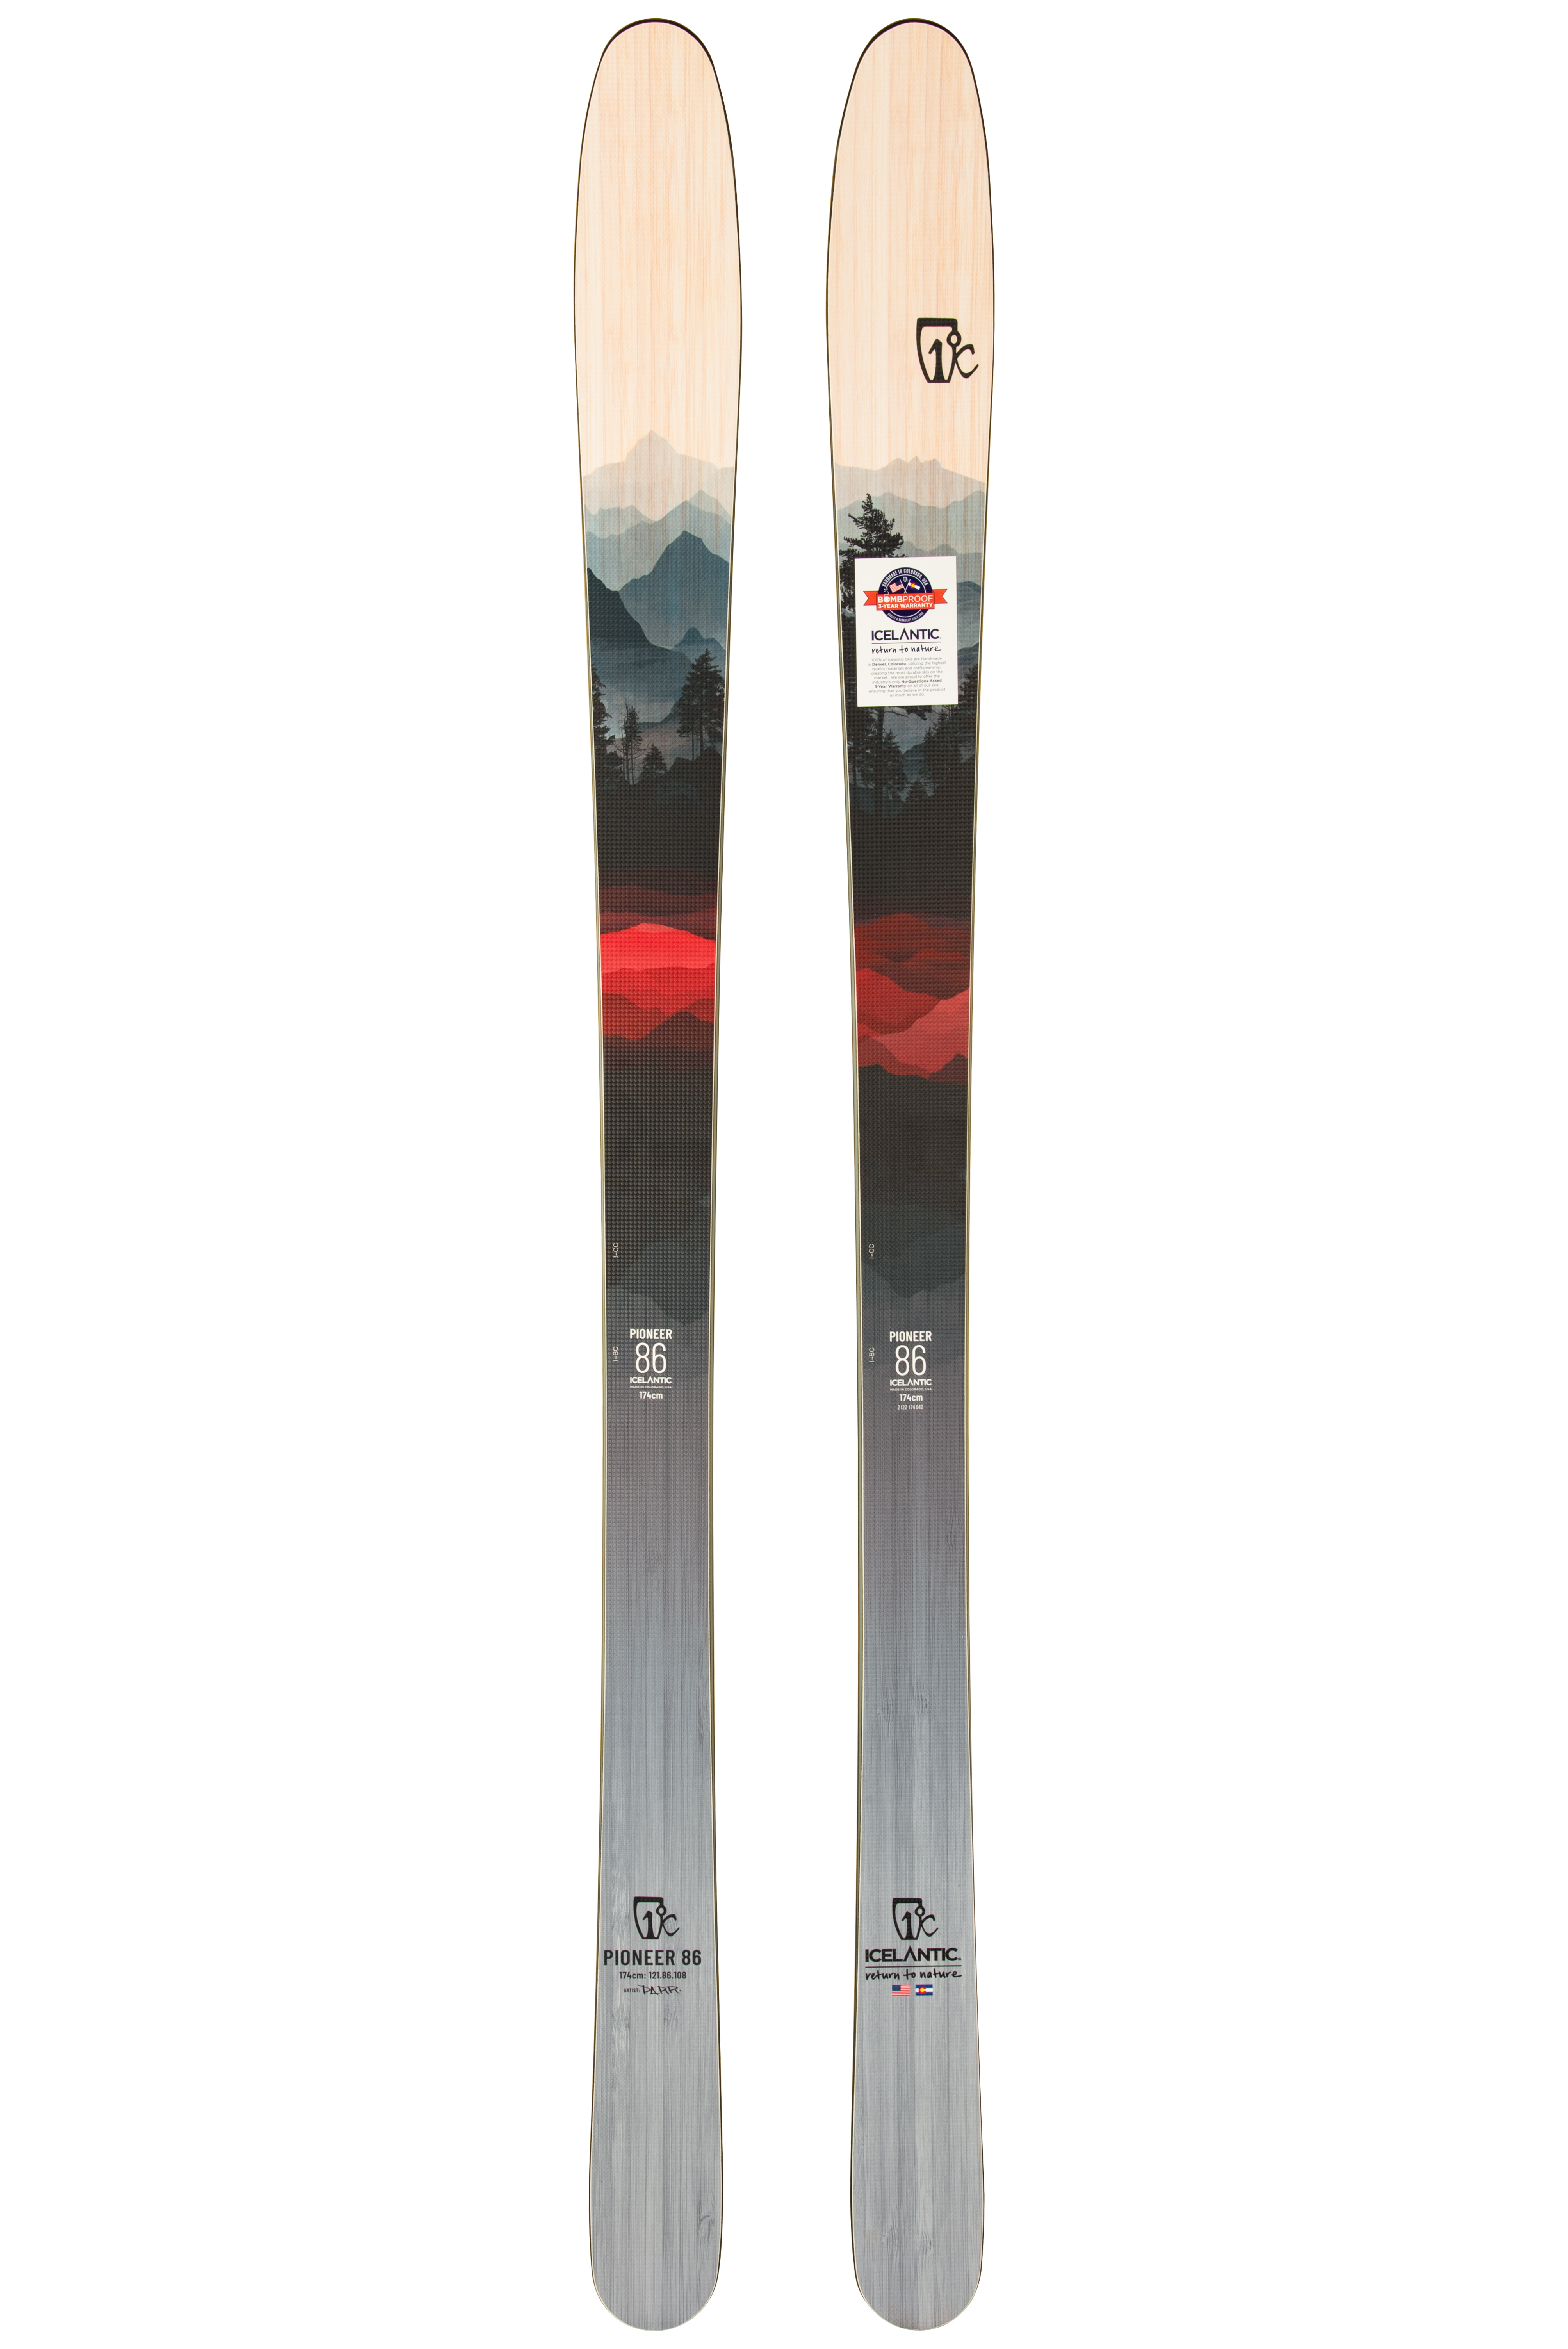 Купить лыжи с камбером Icelantic Pioneer 86 2021/2022 174cm в Киеве